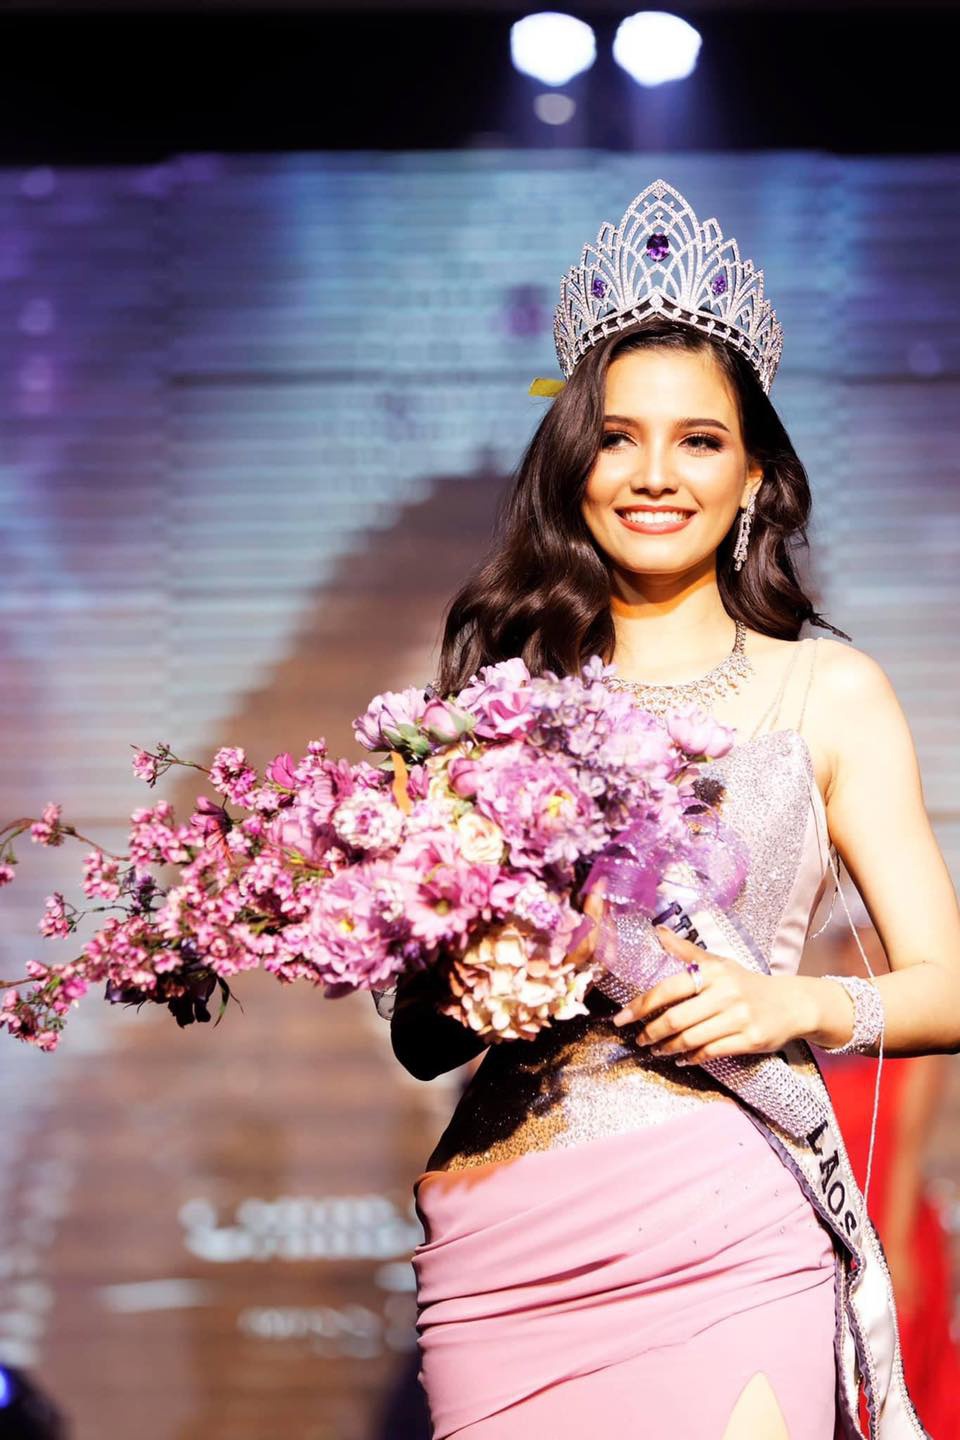 Việc Christina được chọn để trao vương miện Hoa hậu Hoàn vũ Lào 2020 gây bất ngờ cho dư luận, bởi cô đã đăng quang từ 9 năm trước